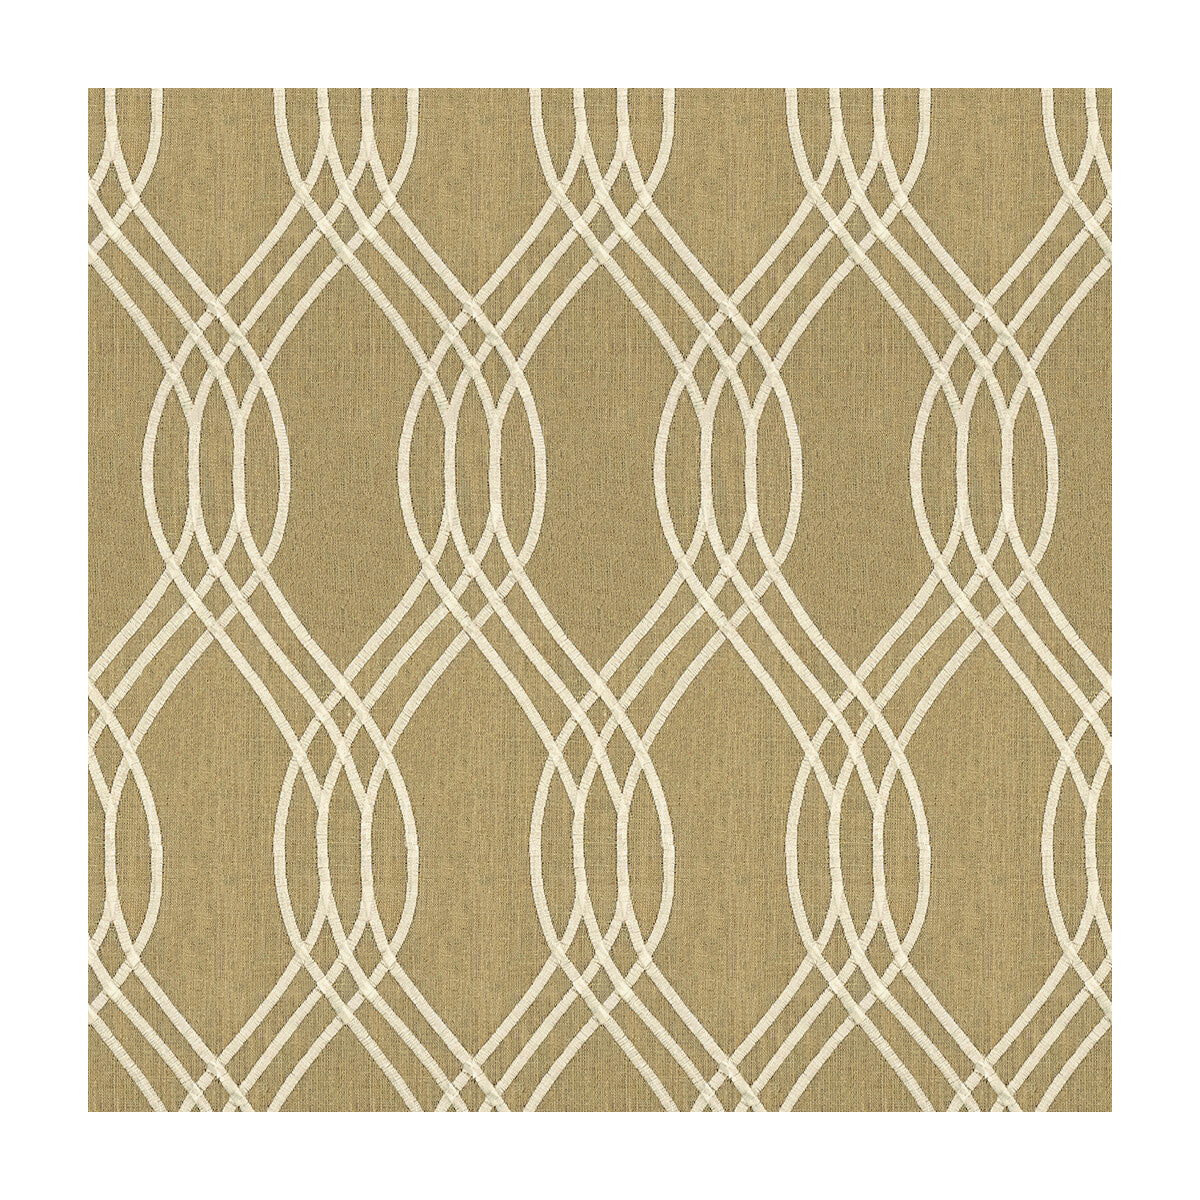 Kravet Basics fabric in 32209-106 color - pattern 32209.106.0 - by Kravet Basics